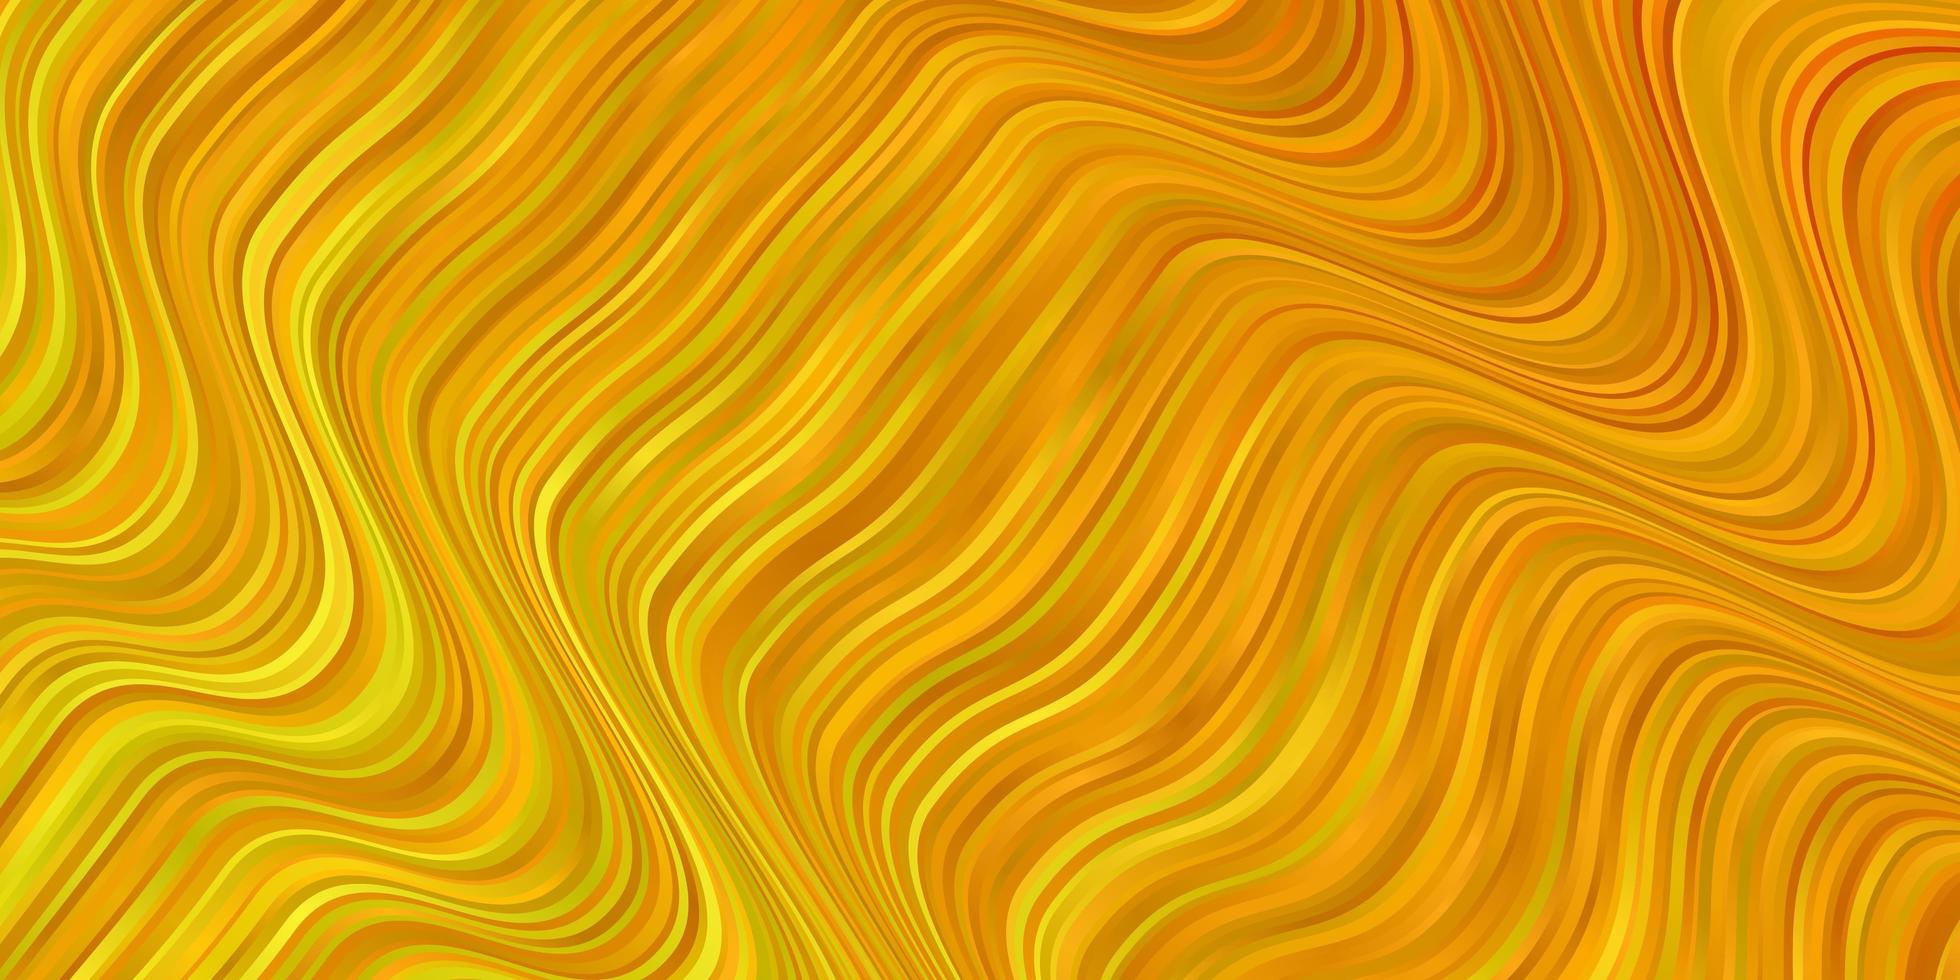 trama vettoriale giallo chiaro con illustrazione colorata ad arco circolare che consiste in un modello di curve per cellulari